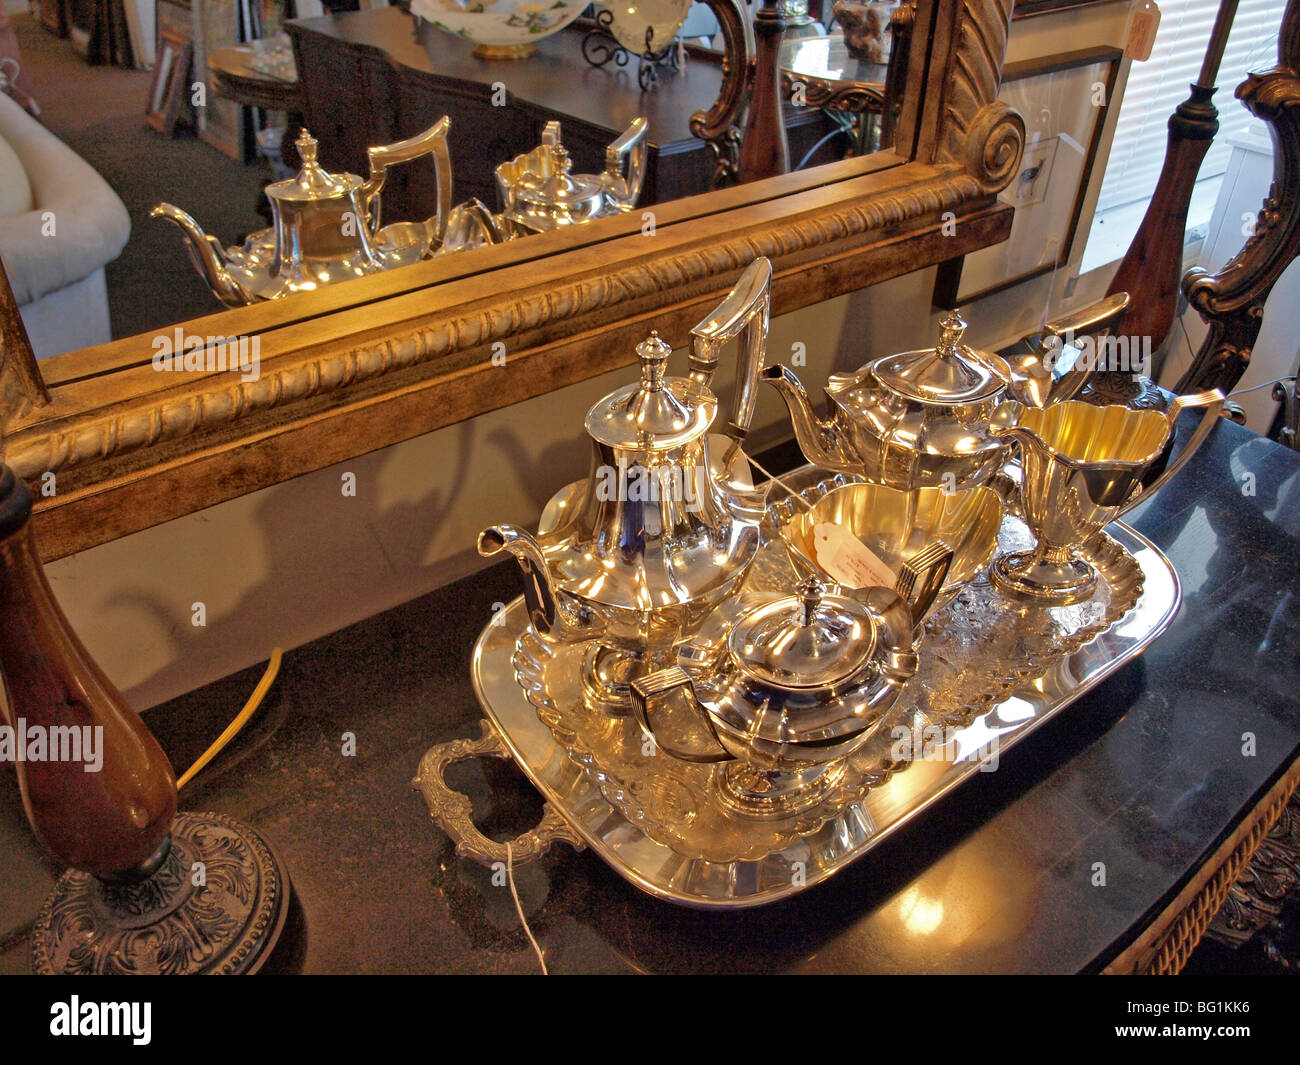 Silber Teeservice mit Kanne Kannen Teekannen und Tablett und Zuckerdose alle sitzt auf einer Theke mit einigen Spiegelbilder Stockfoto